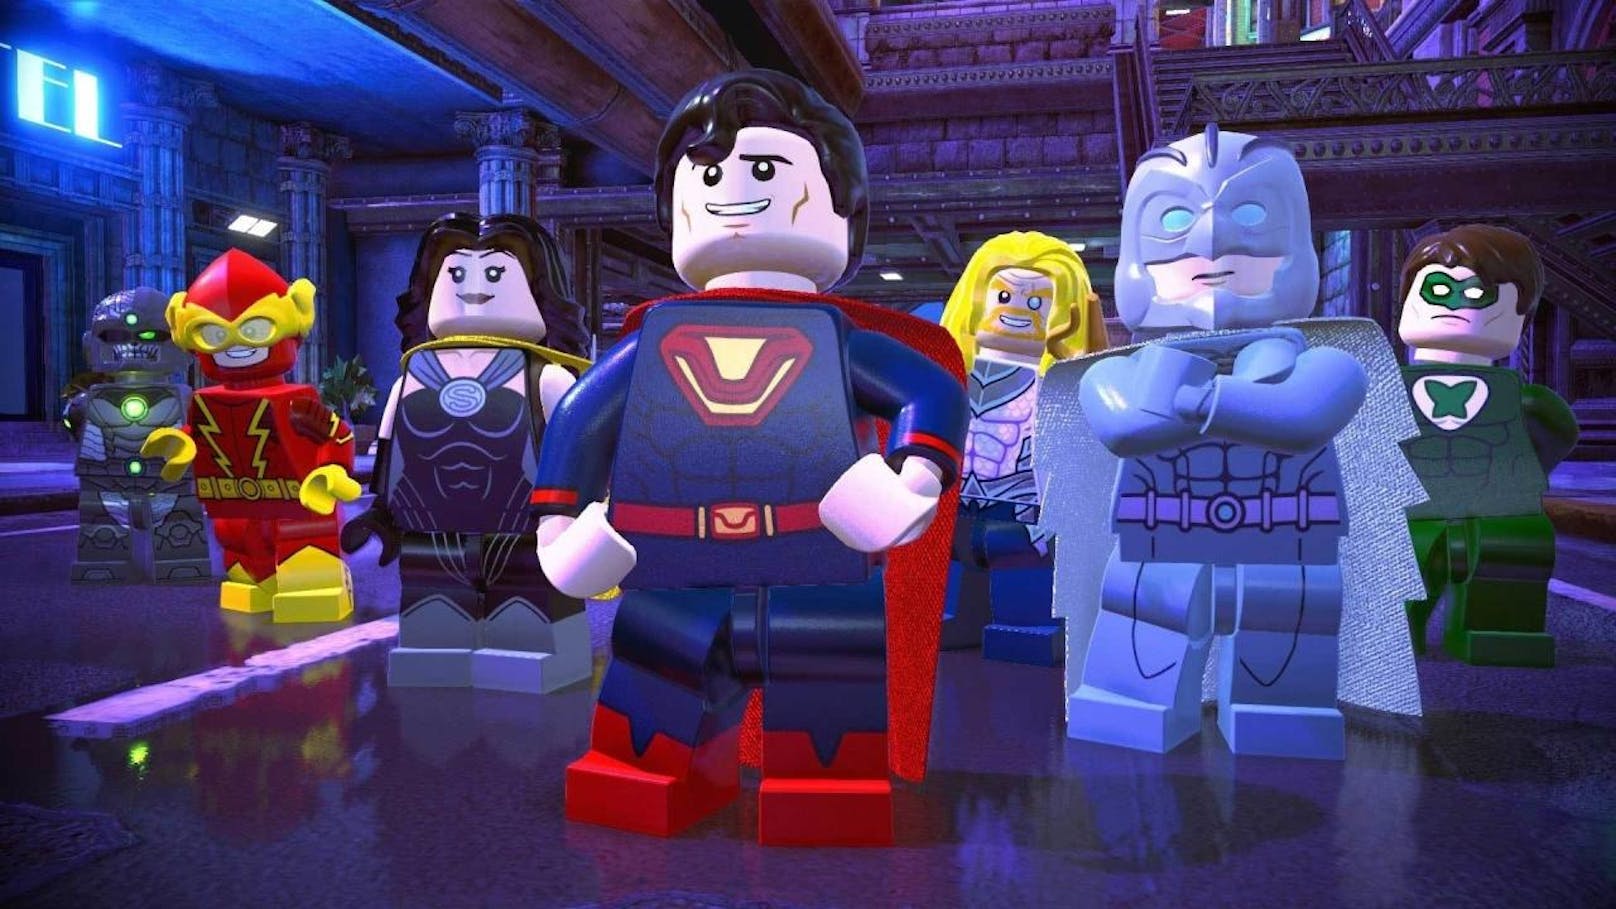 Eine böse Justice League aus einer anderen Dimension lässt die Helden rund um Batman, Superman und Wonder Woman einfach verschwinden. Und nun liegt es am Joker, Lex Luthor und ihren schurkischen Kollegen, die Welt zu retten.